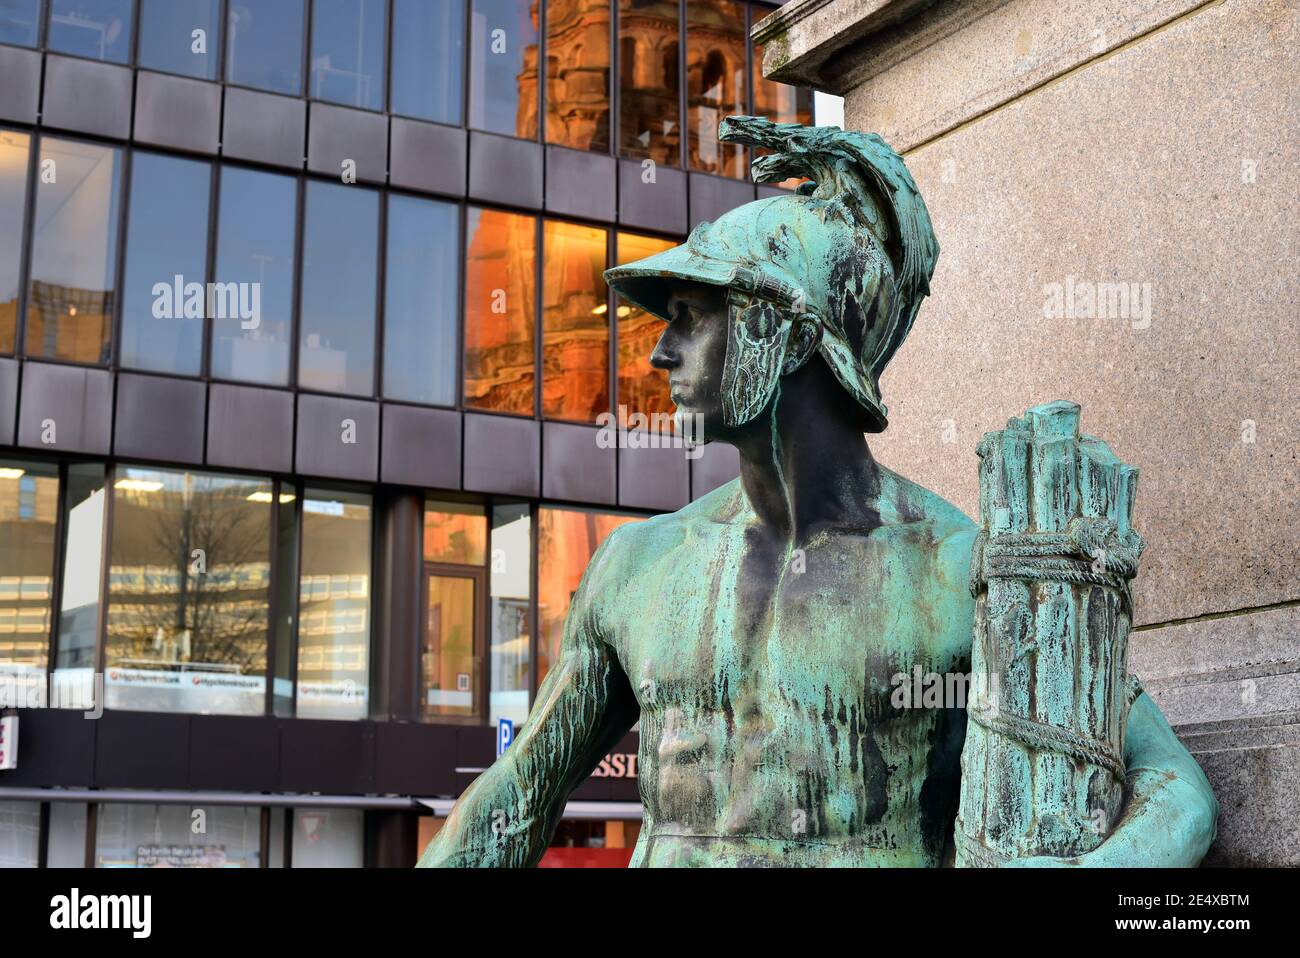 Ancienne sculpture en bronze d'une allégorie masculine du monument Bismarck dans le centre-ville de Düsseldorf, dévoilée en 1899. Bâtiment moderne en arrière-plan. Banque D'Images